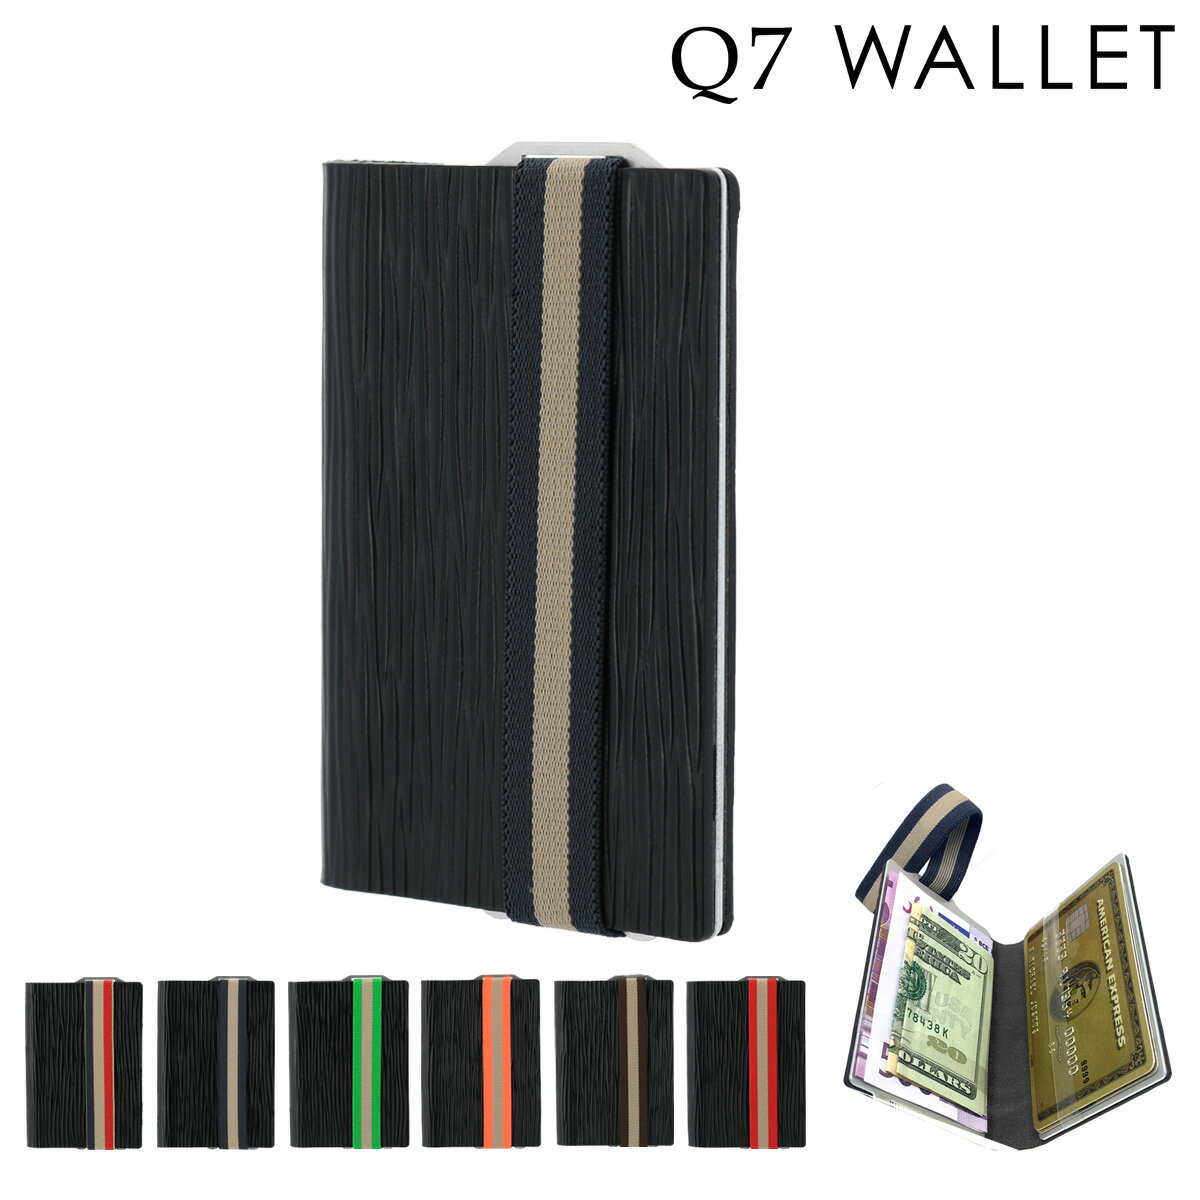 Q7 WALLET カードケース メンズ ドイツ製 510040 本革｜カードプロテクター RFID スキミング防止 キュ..